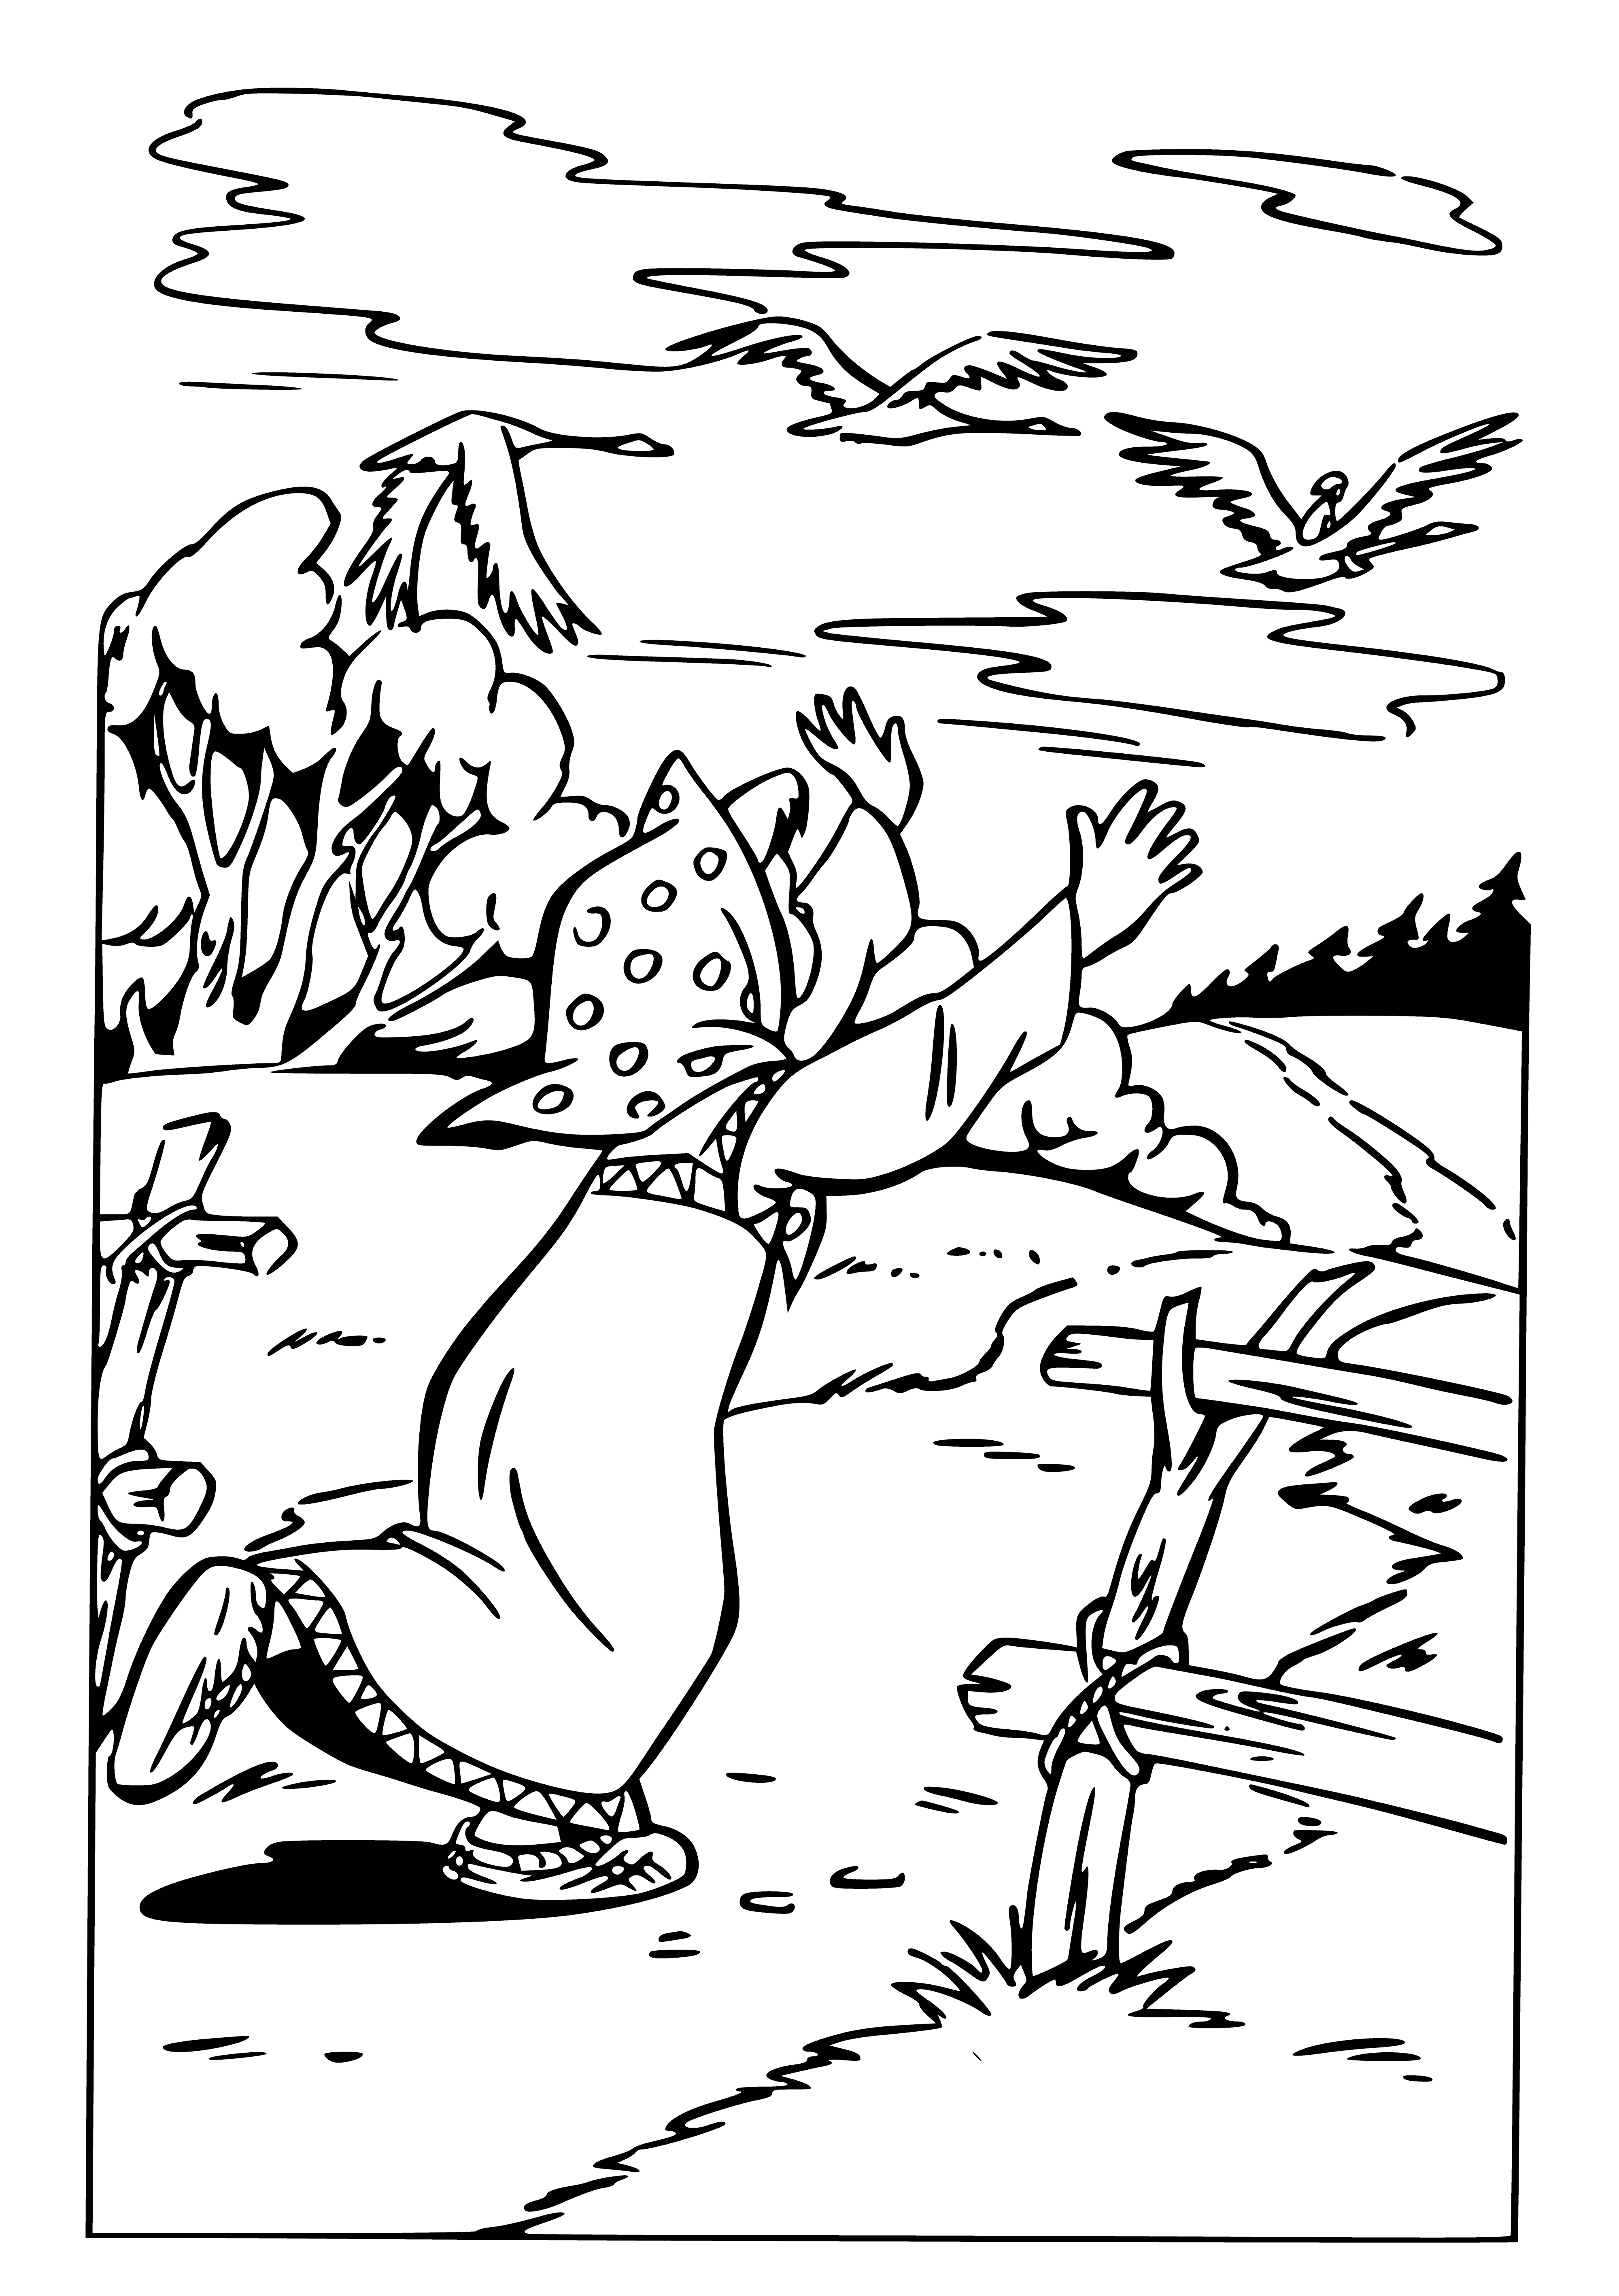 Kaz-kuğular Ivanushka&#39;yı alıp götürüyor boyama sayfası